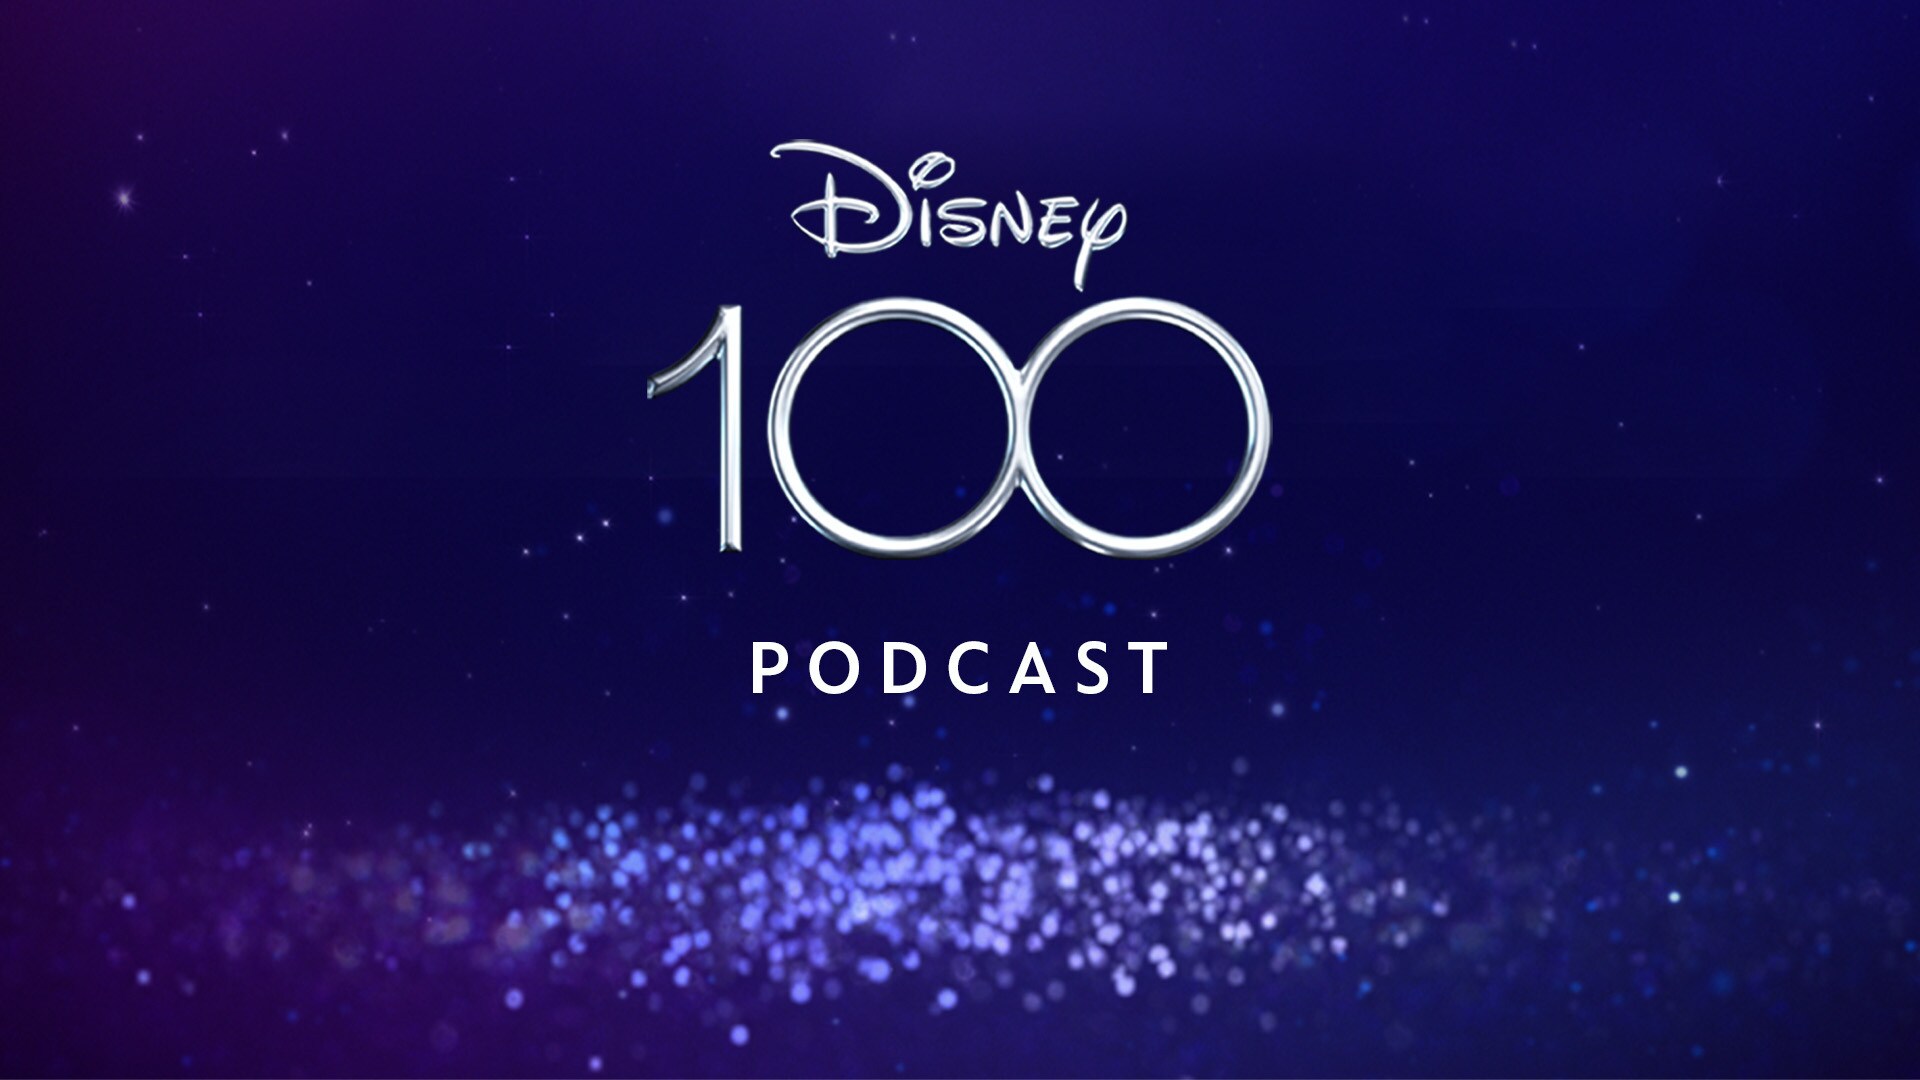 Ruszył podcast Disney100 z okazji stulecia Disneya 